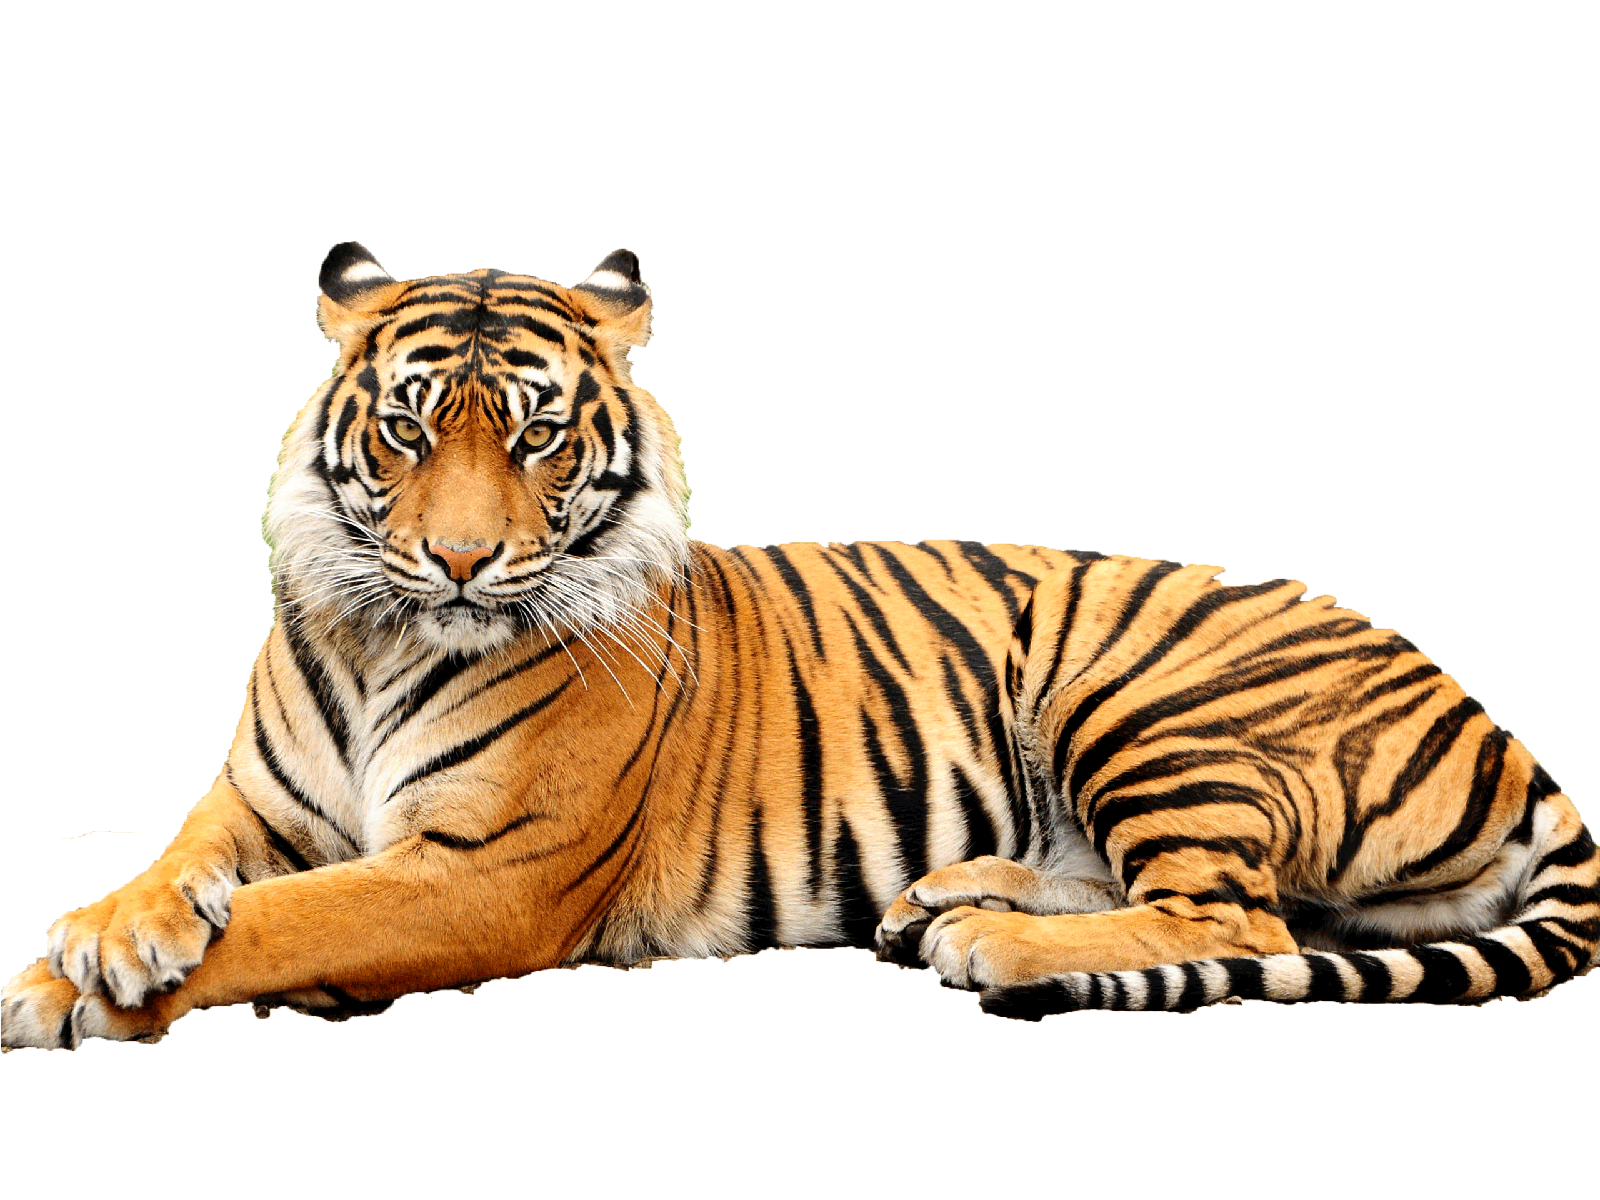 Tiger PNG Images Transparent Free Download.